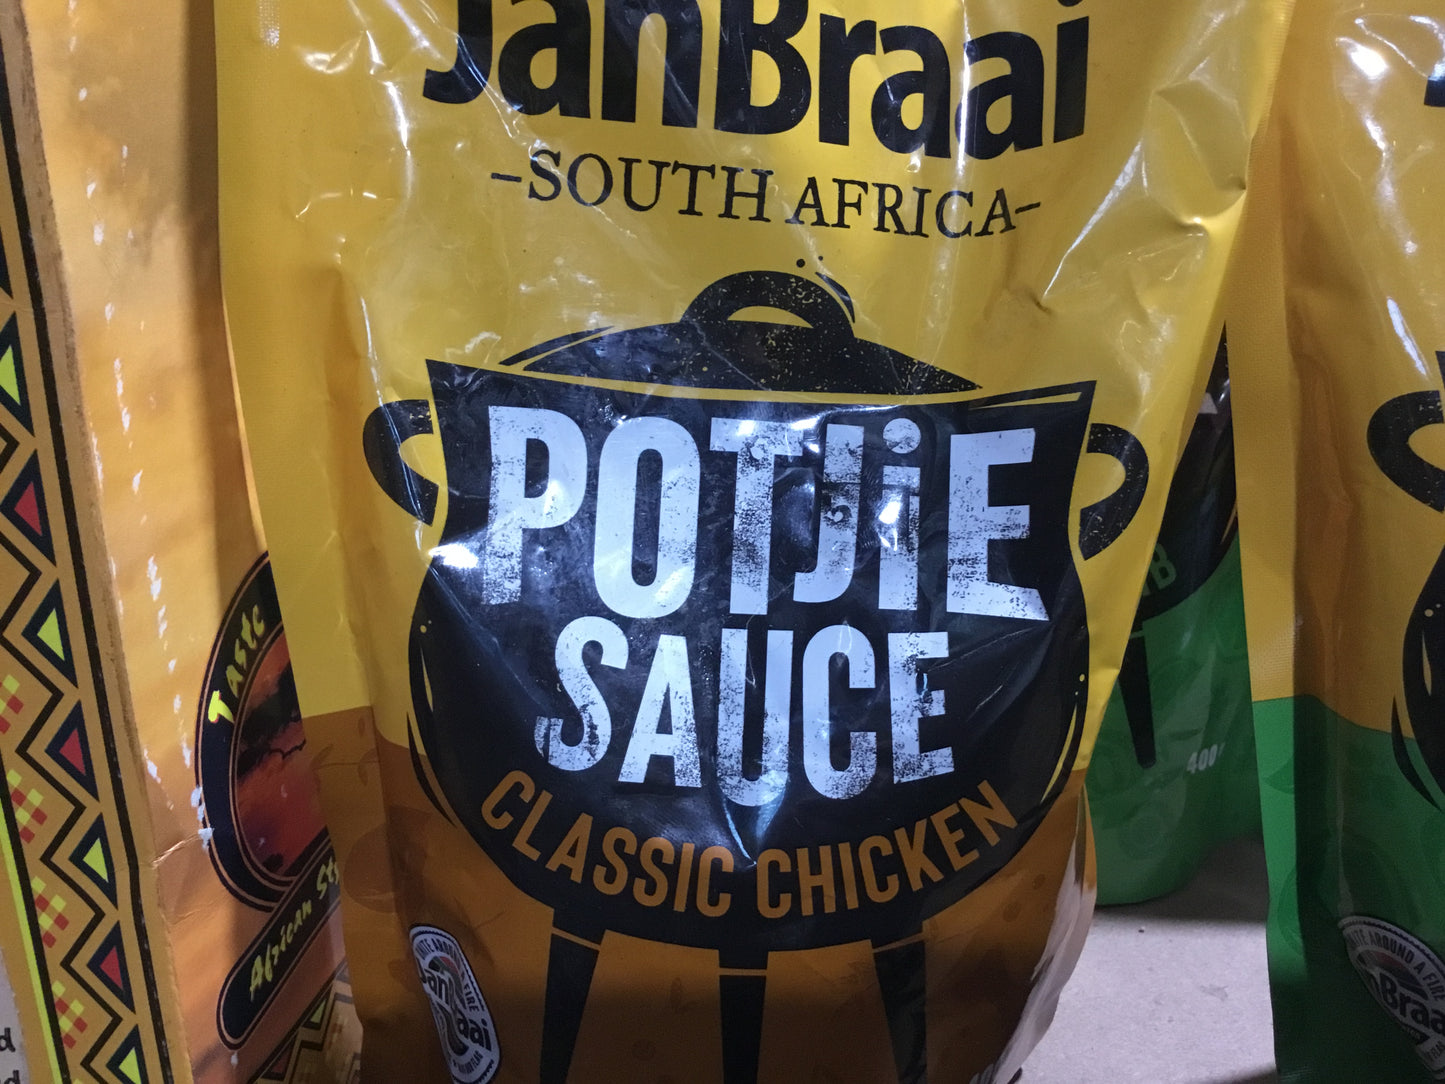 Jan Braai Potjie Sauce Classic Chicken Potjie Sauce 400g Doy Pack